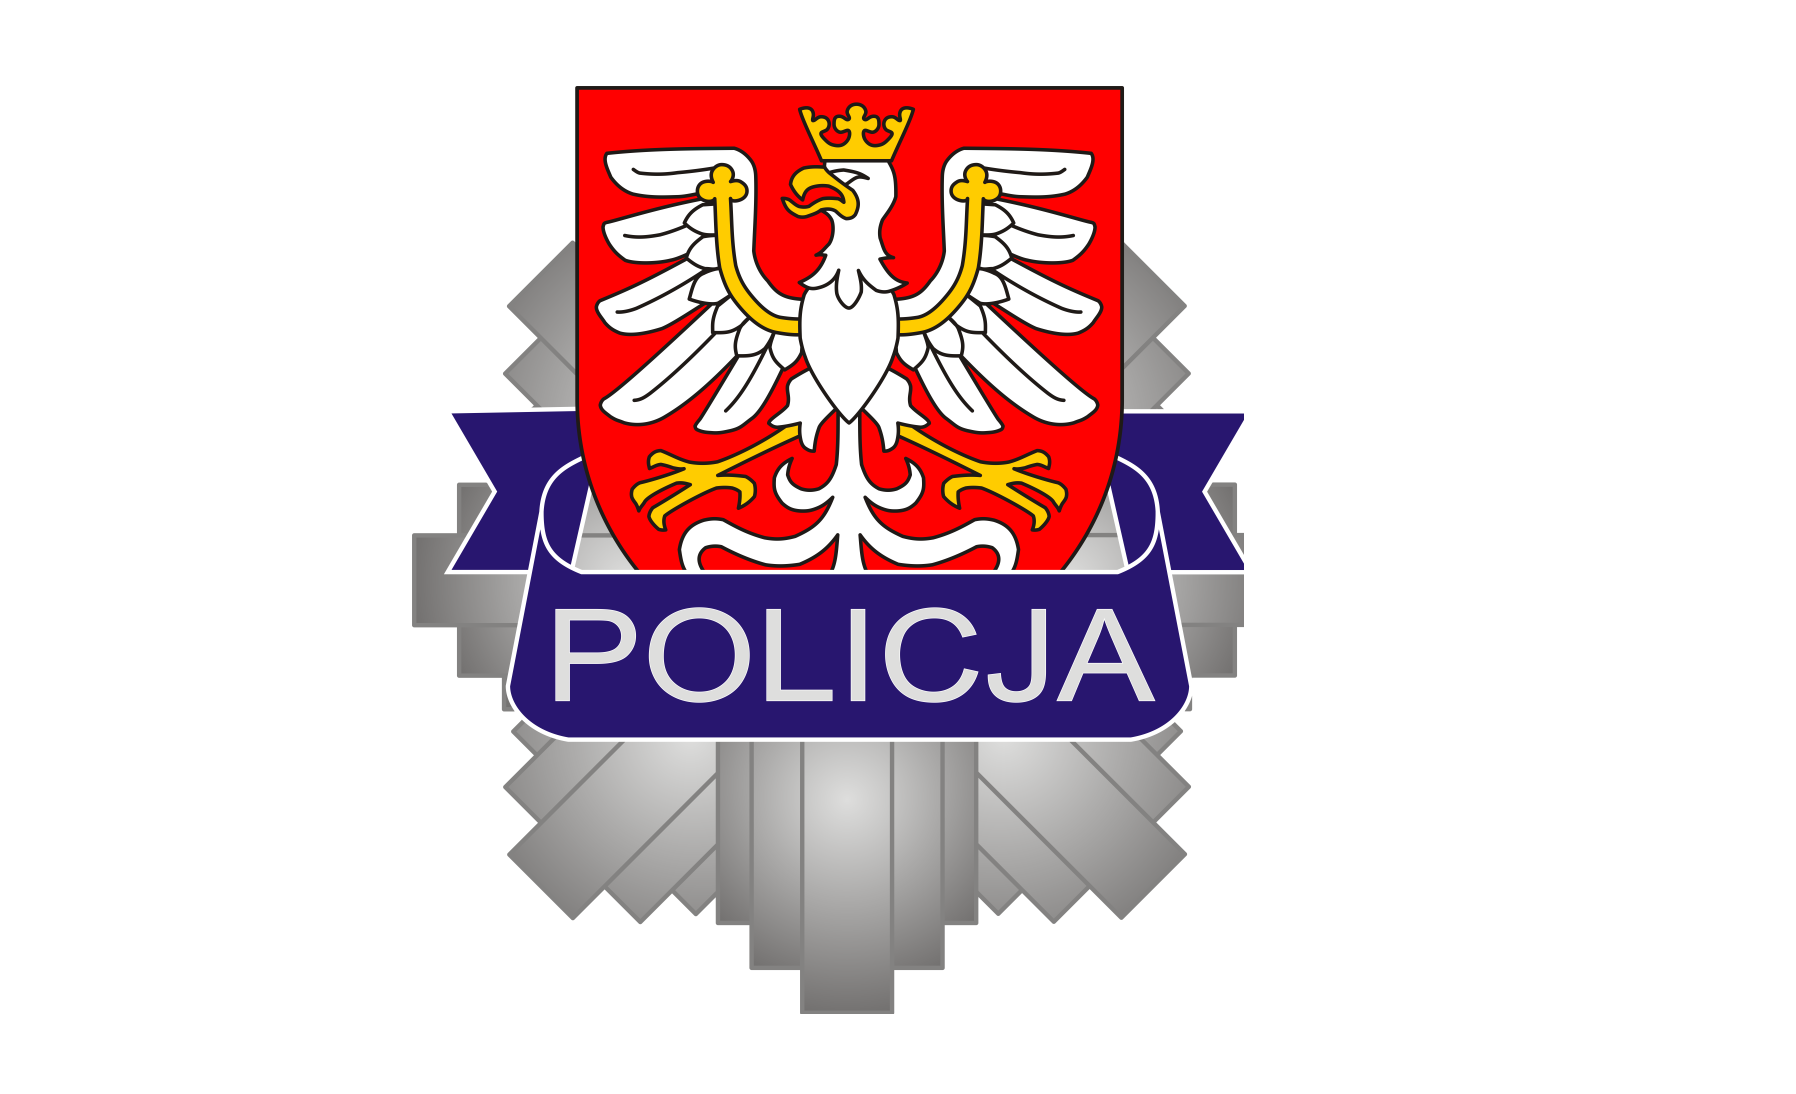 POLICJA